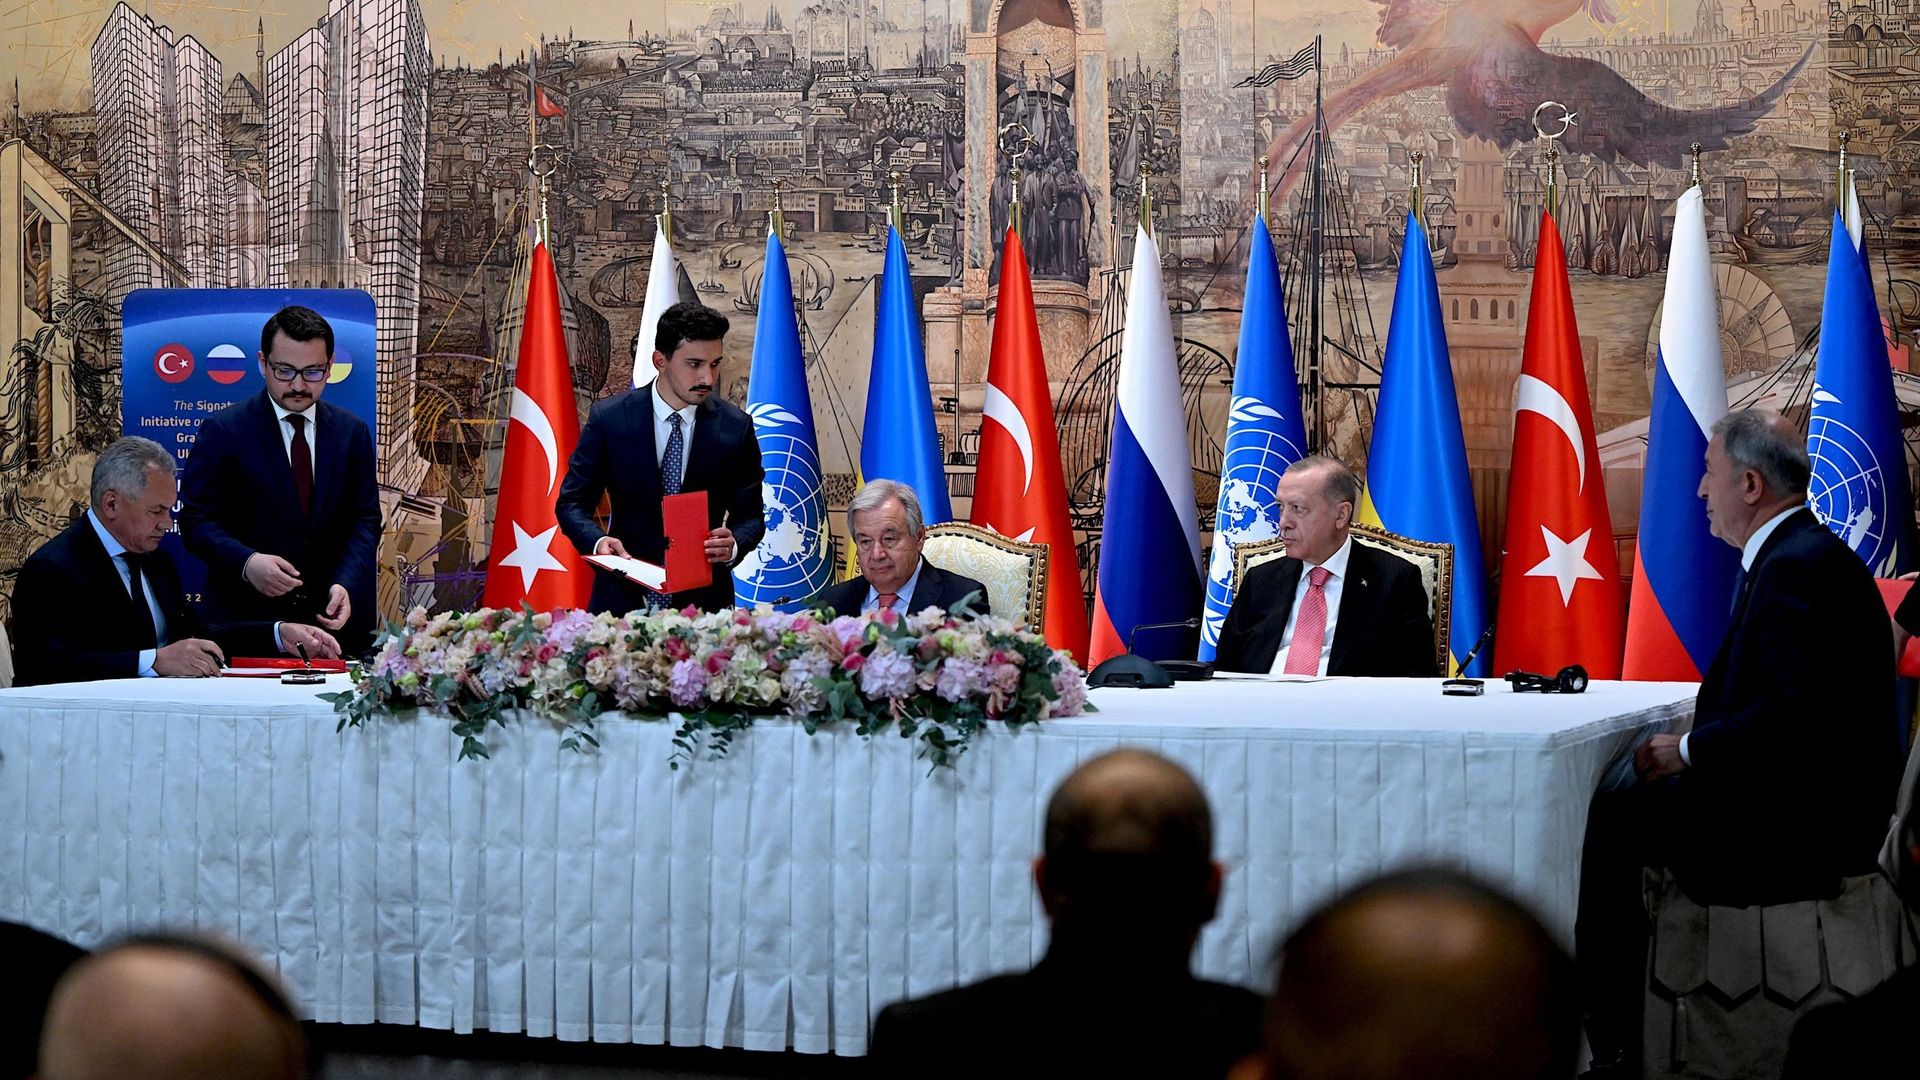 Après d’âpres négociations, la Russie et l’Ukraine ont trouvé un accord sur les céréales sous l’égide de la Turquie et de l’ONU.